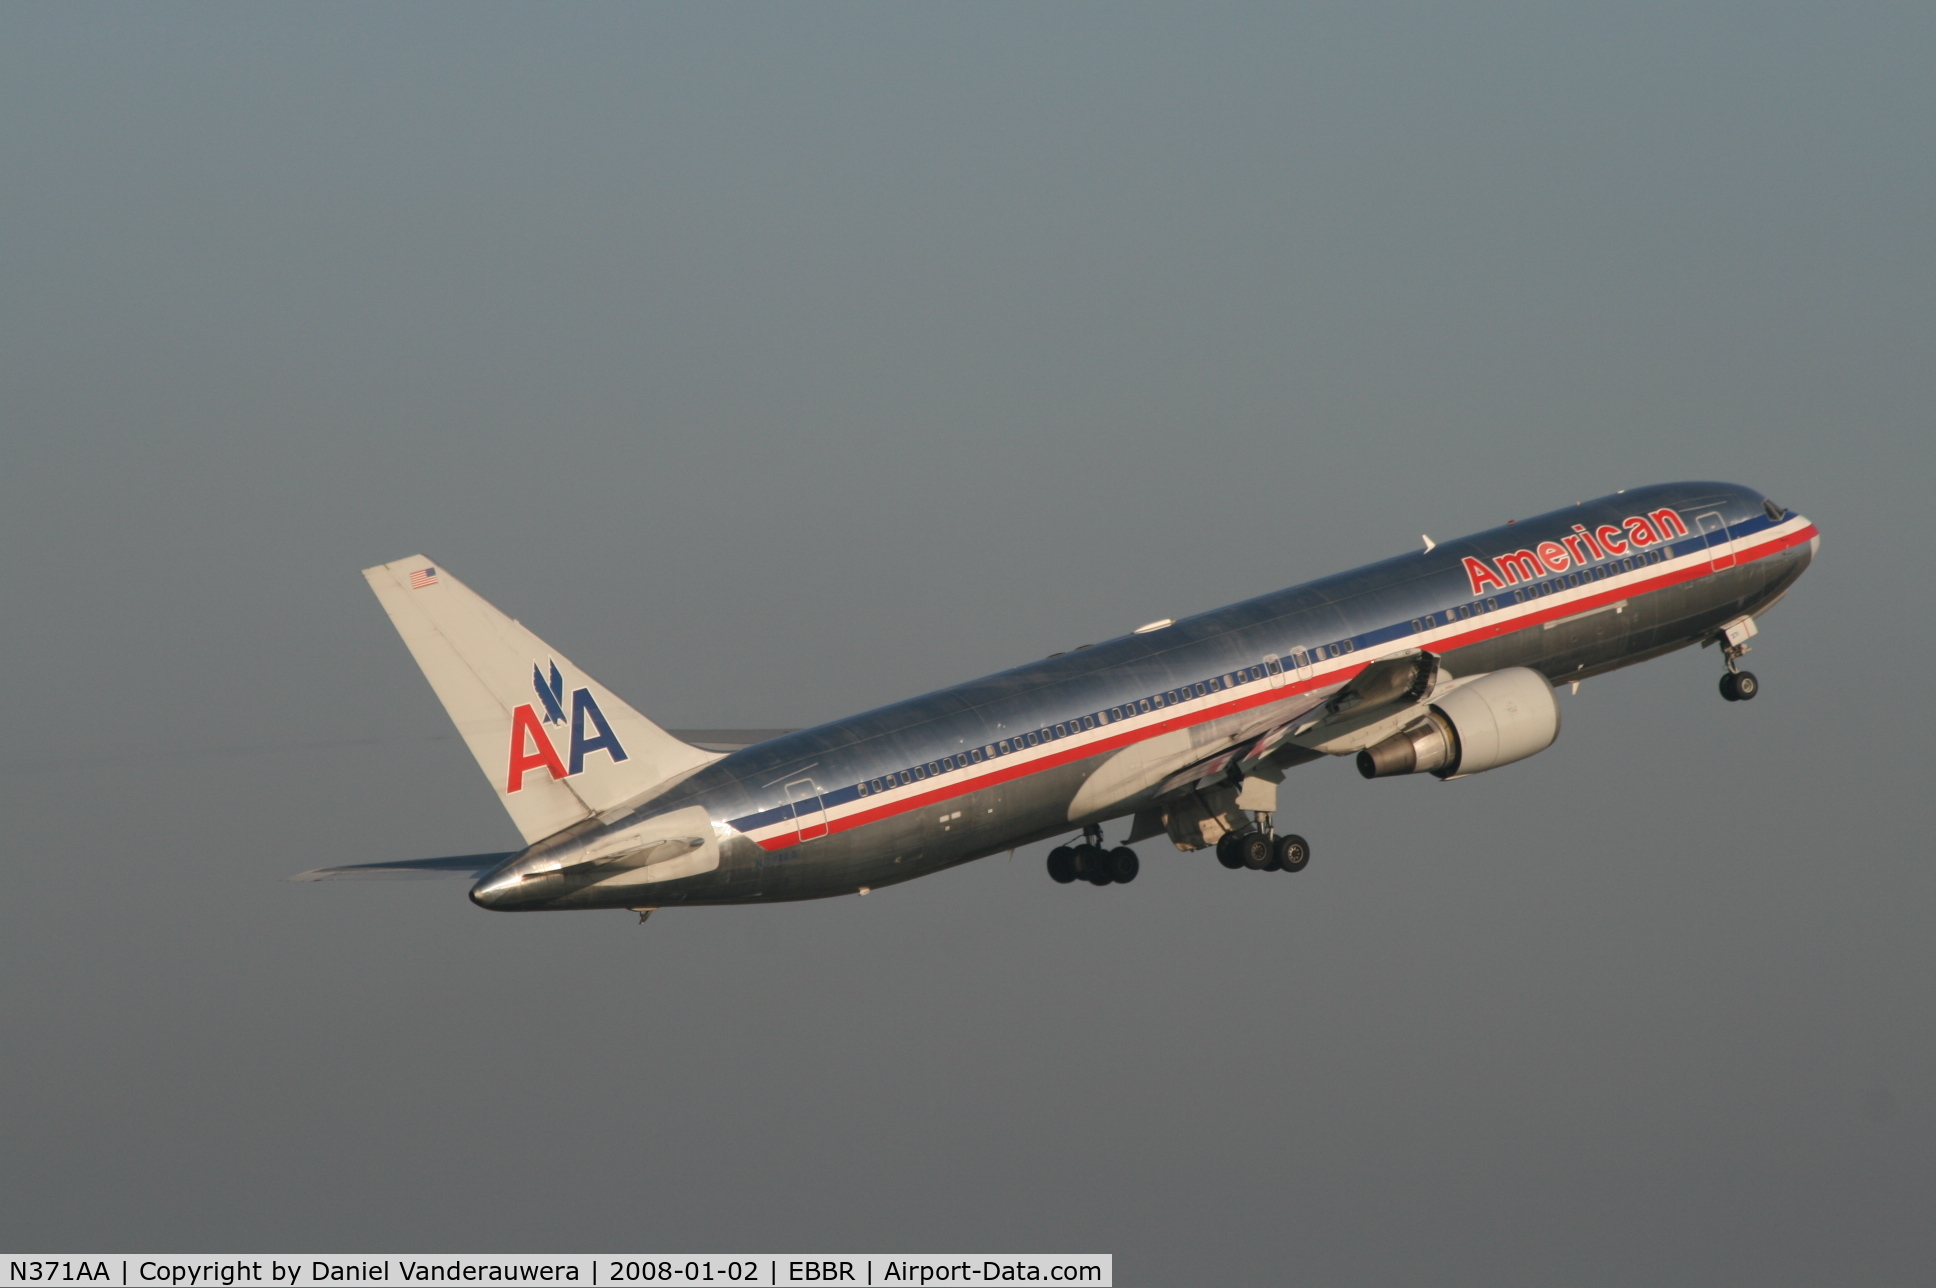 N371AA, 1992 Boeing 767-323 C/N 25198, flight AA089 is taking off from rwy 07R